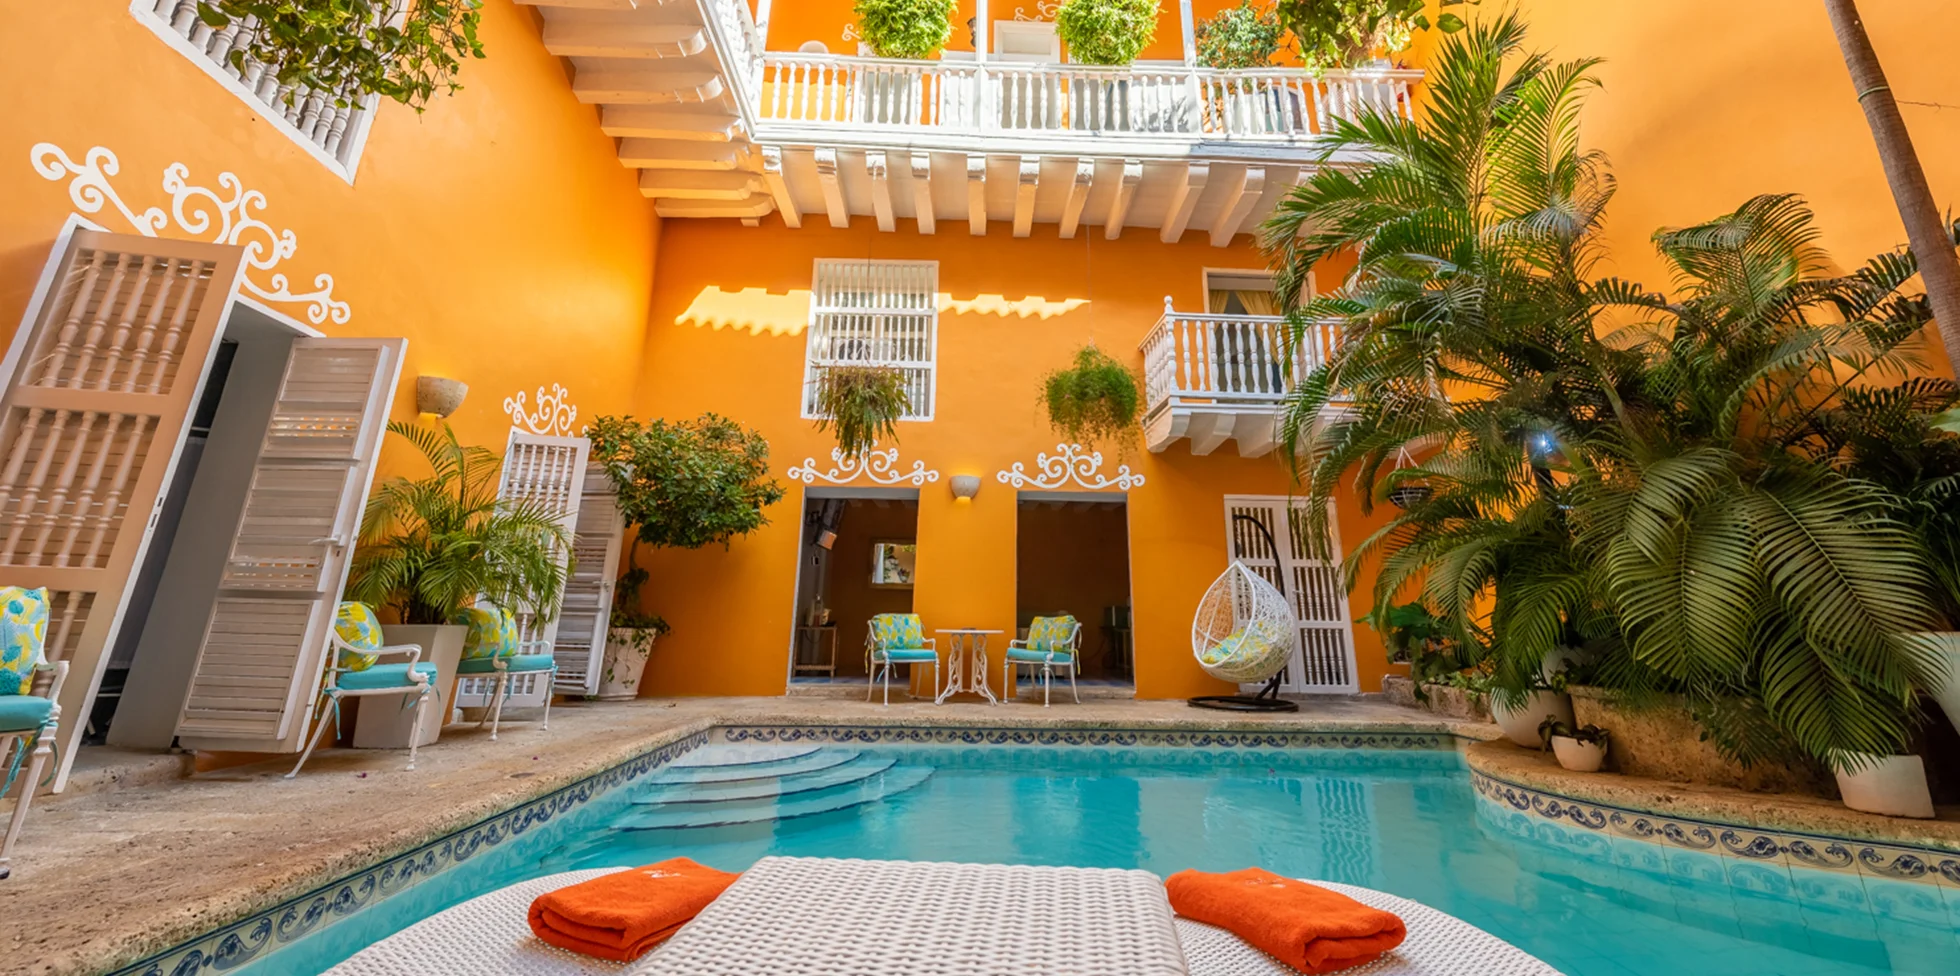 Villa Orange - Classy Cartagena